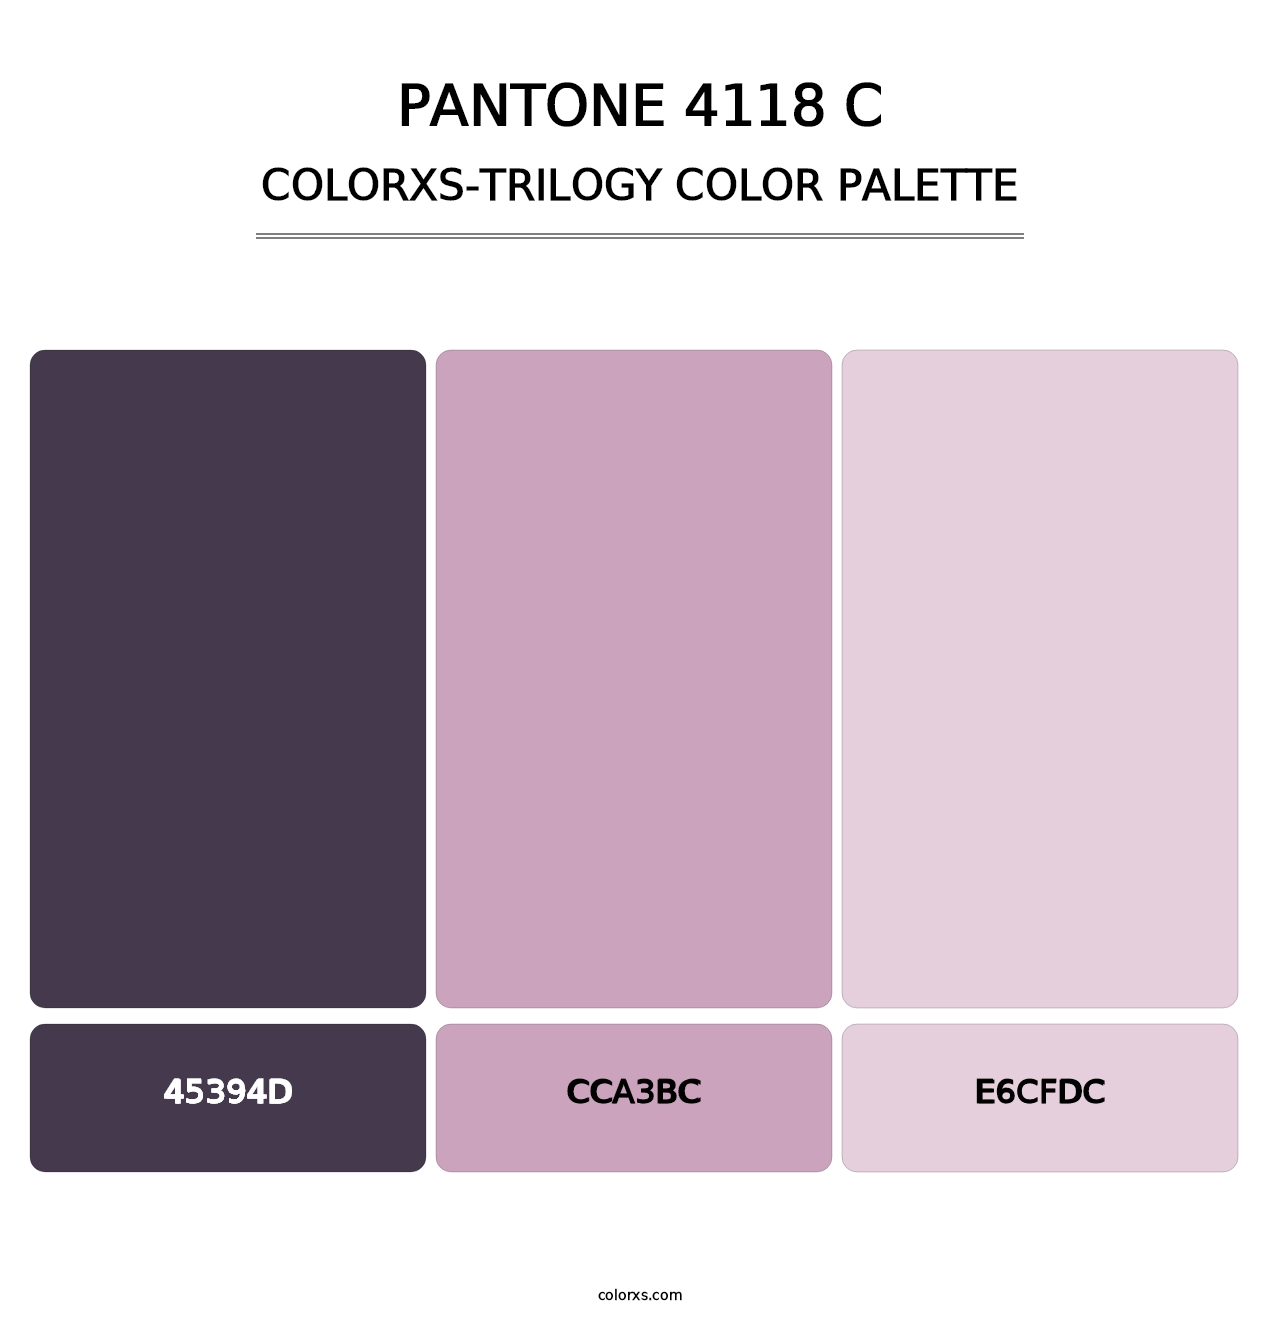 PANTONE 4118 C - Colorxs Trilogy Palette